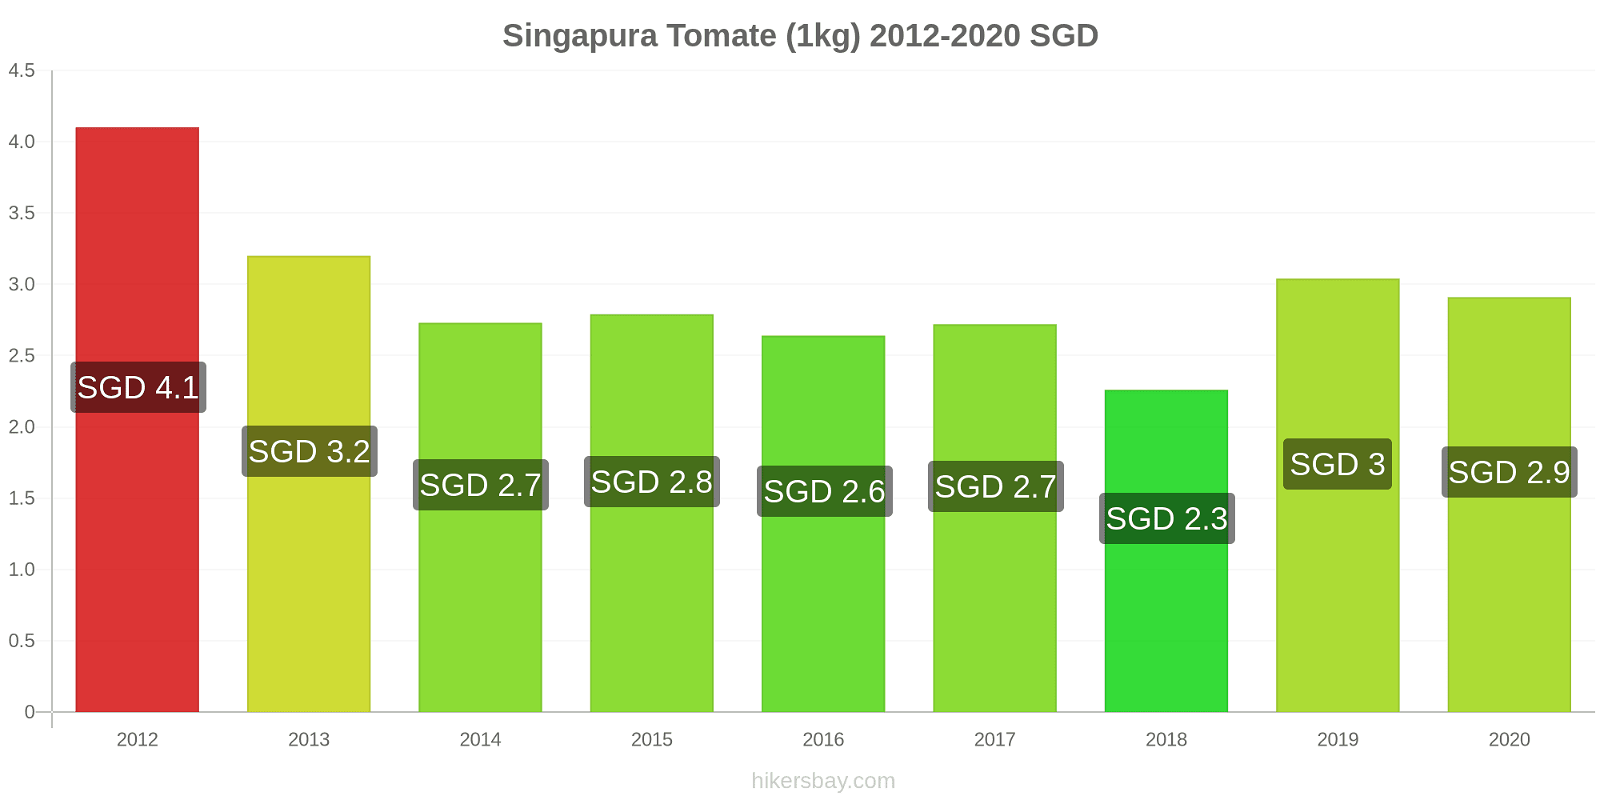 Singapura variação de preço Tomate (1kg) hikersbay.com